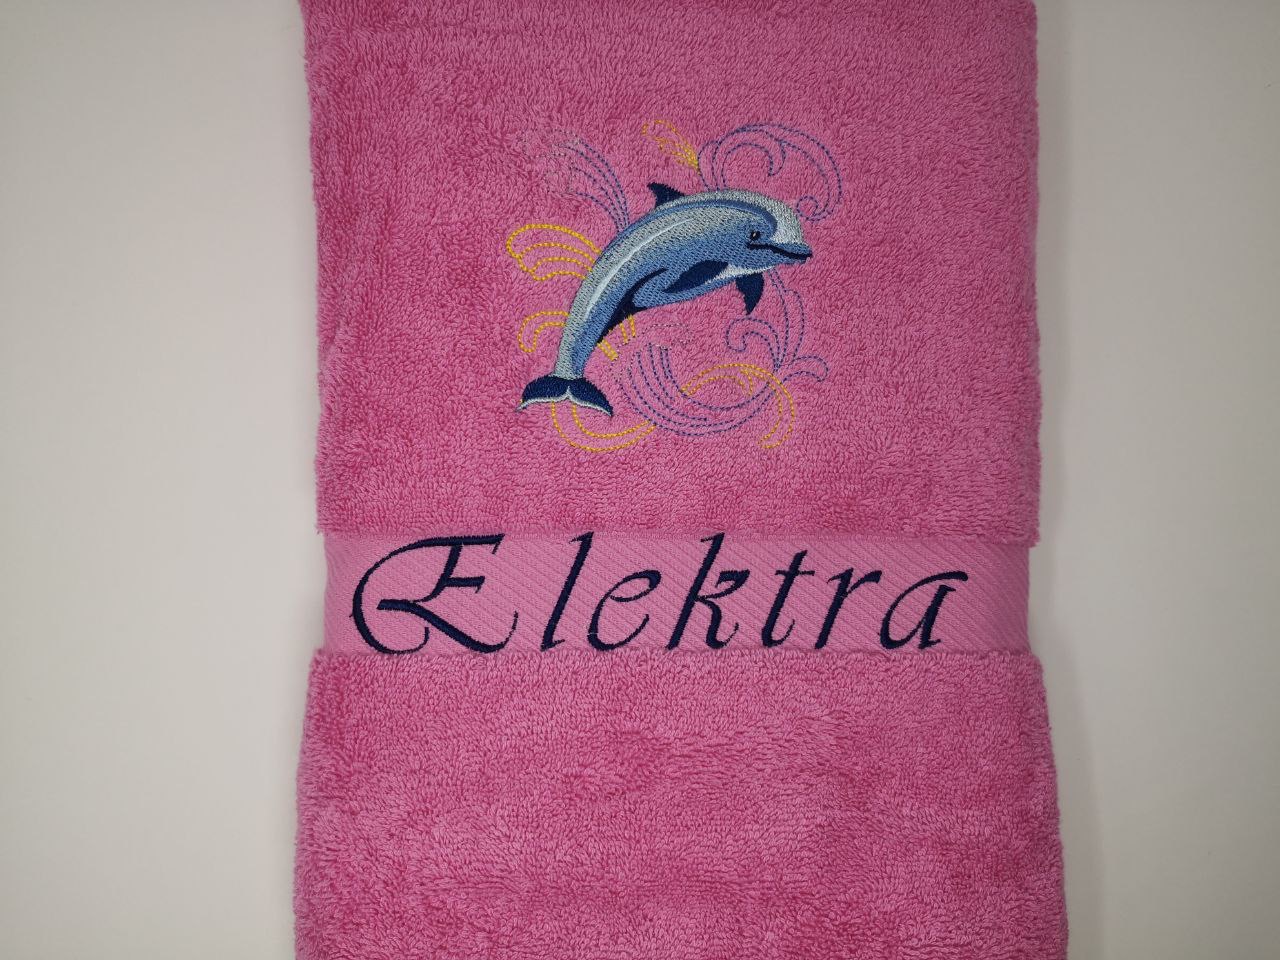 Meerestiere Delfin Handtuch Duschtuch bestickt & personalisierbar Super Qualität